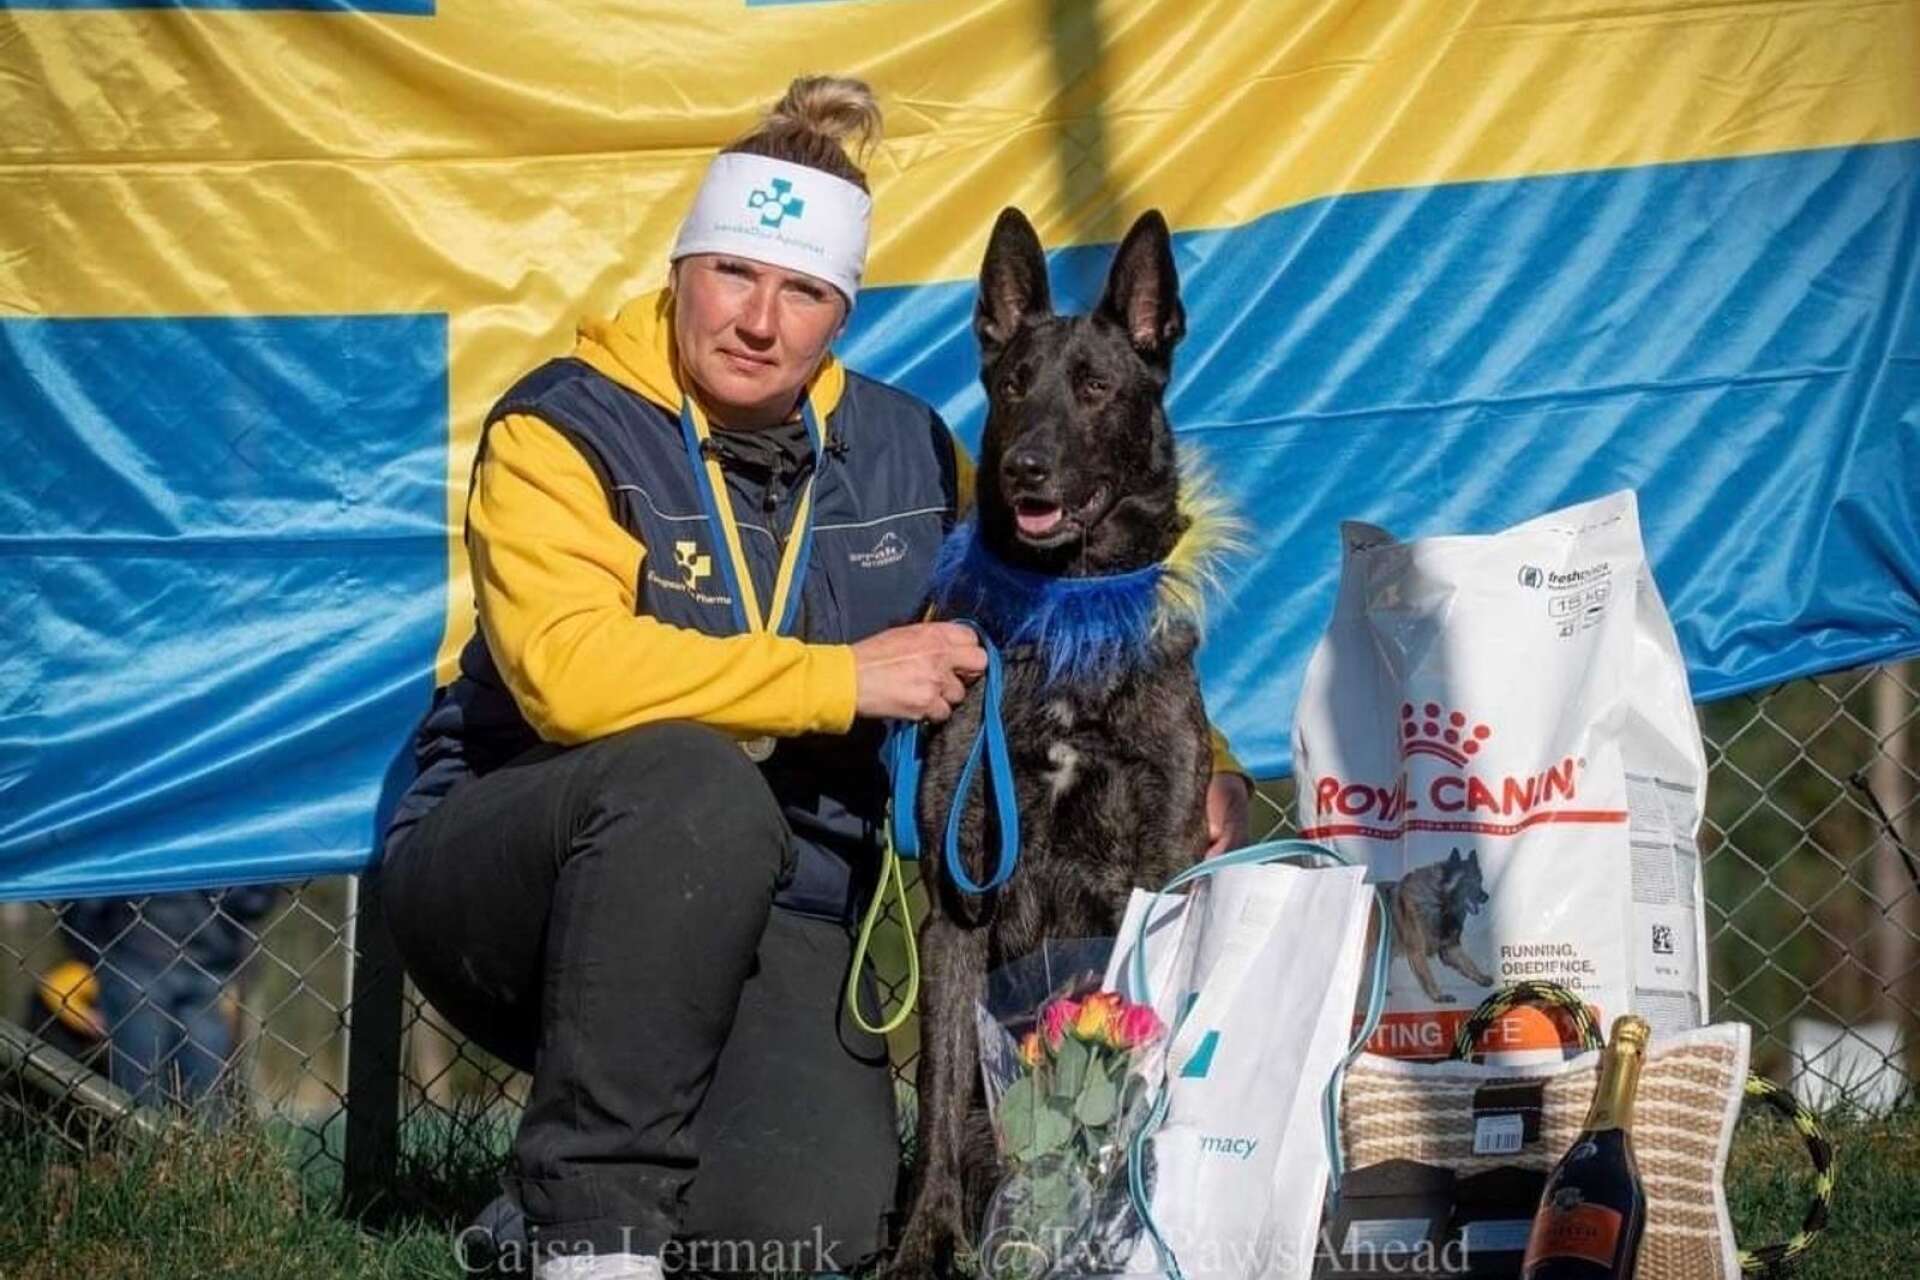 Linda Jonsson från Säffle är regerande världsmästare i IGP 2 med sin egenuppfödda hund Besten.